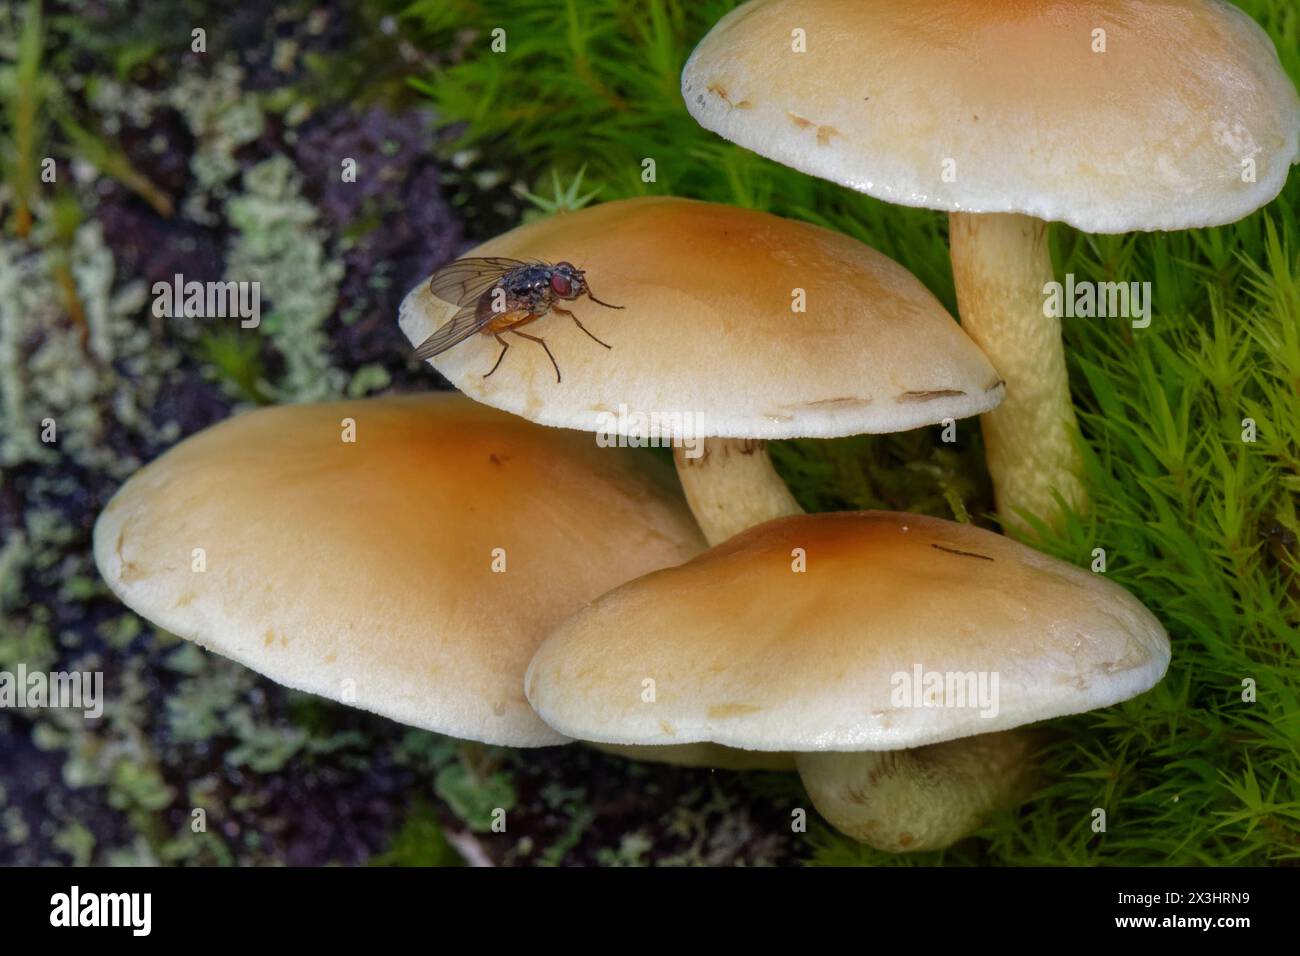 Mosca di Muscid / Bristleshin con panciuta d'arancia (Phaonia subventa) le cui larve precedono i mozzi di mosca del fungo, sul Tuft zolfo (Hypholoma fasciculare), Gloucs, Regno Unito. Foto Stock